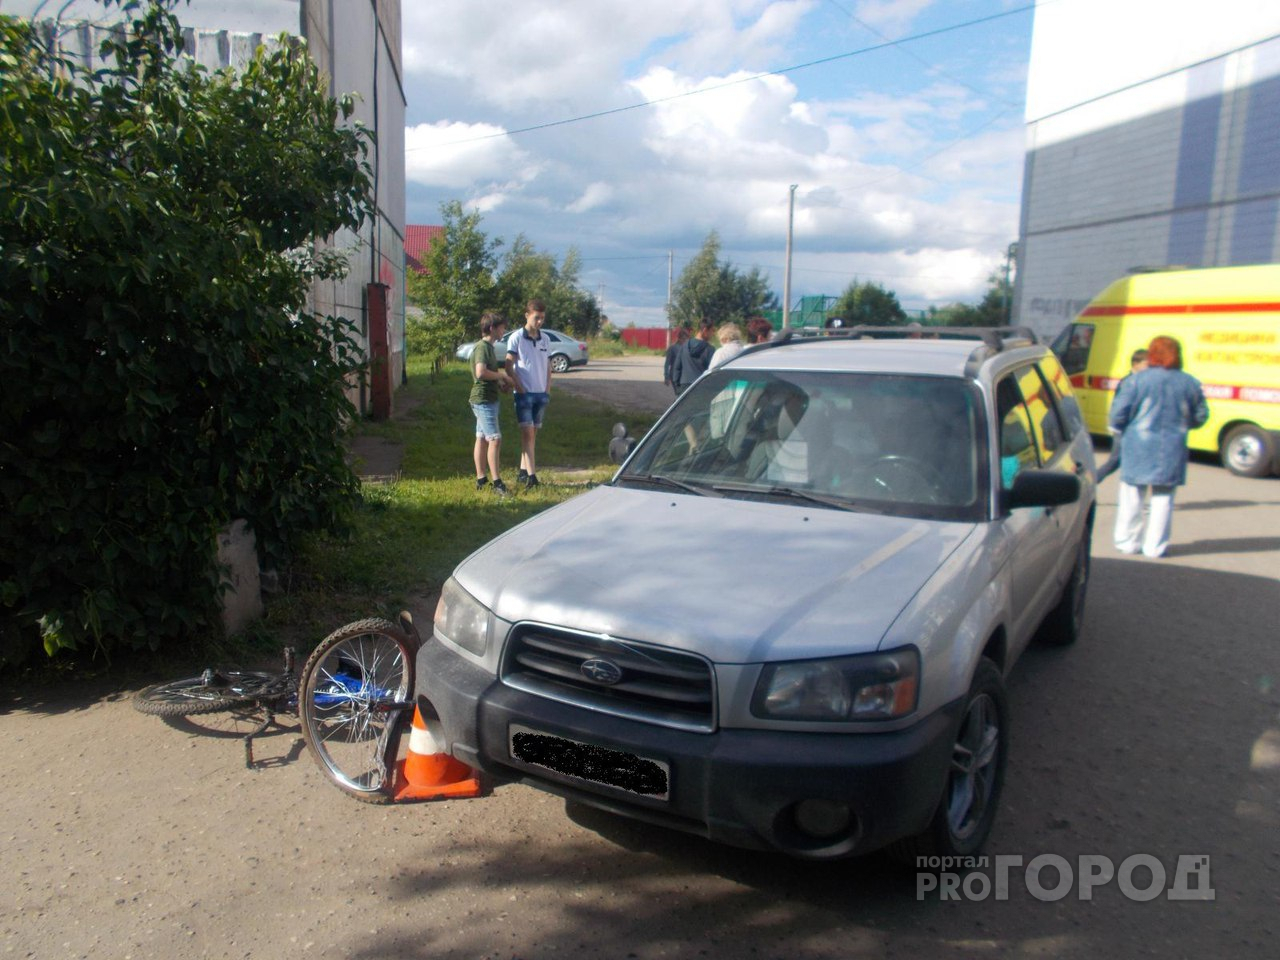 В Ярославле женщина на авто сбила велосипедиста: подробности